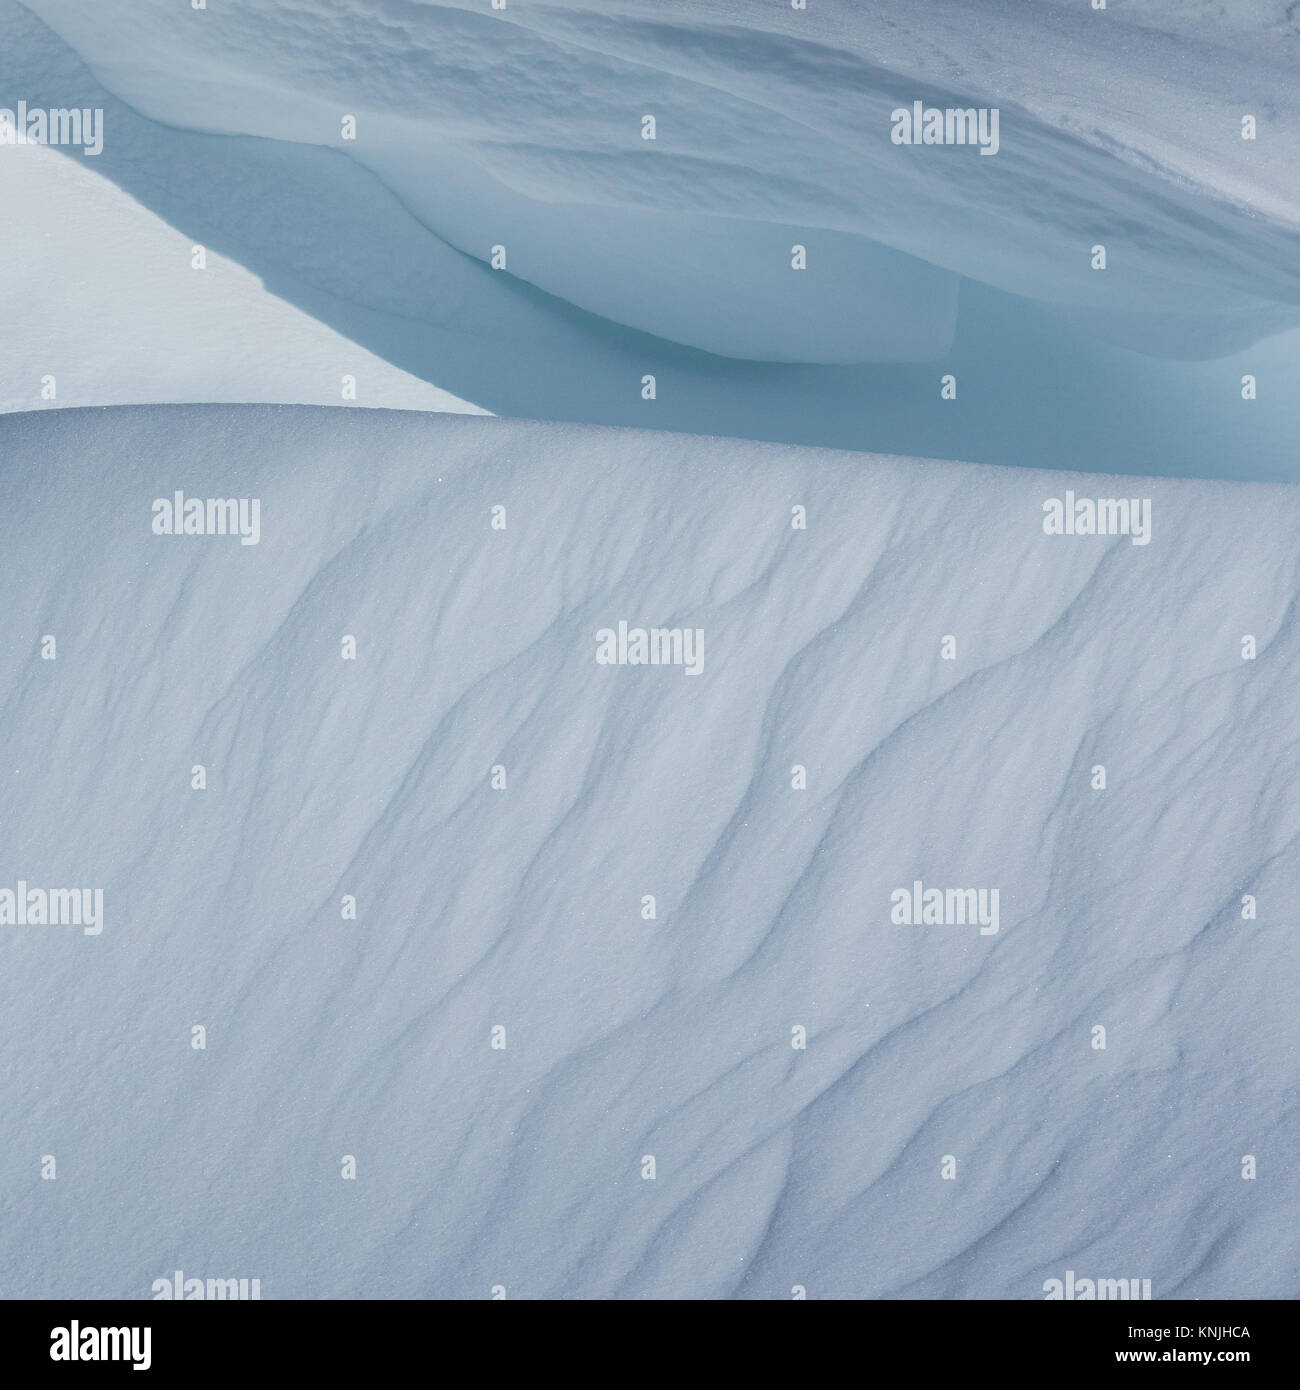 Paxton's Tower. Regno Unito. 11 dicembre, 2017. Immagine astratta di snow drift modelli e forme, Parco Nazionale di Brecon Beacons, Galles. Credito: Drew Buckley/Alamy Live News Foto Stock